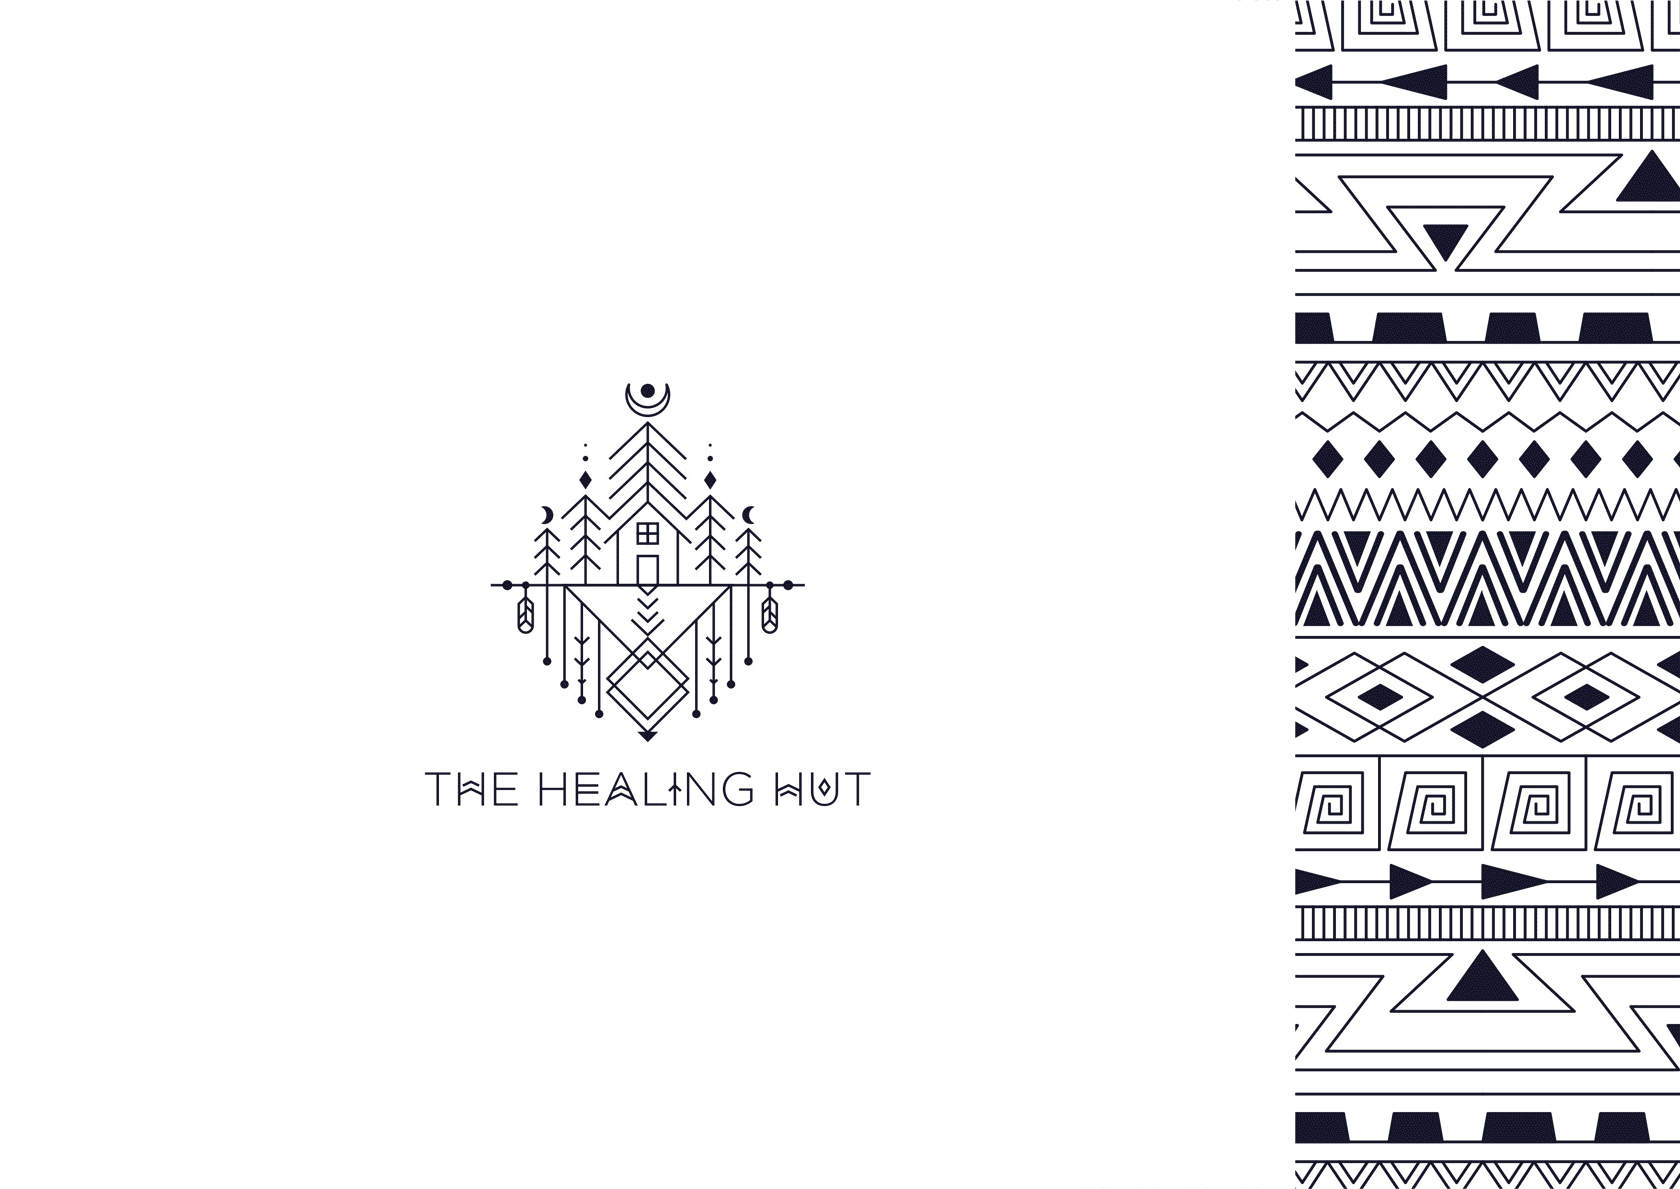 The Healing Hut